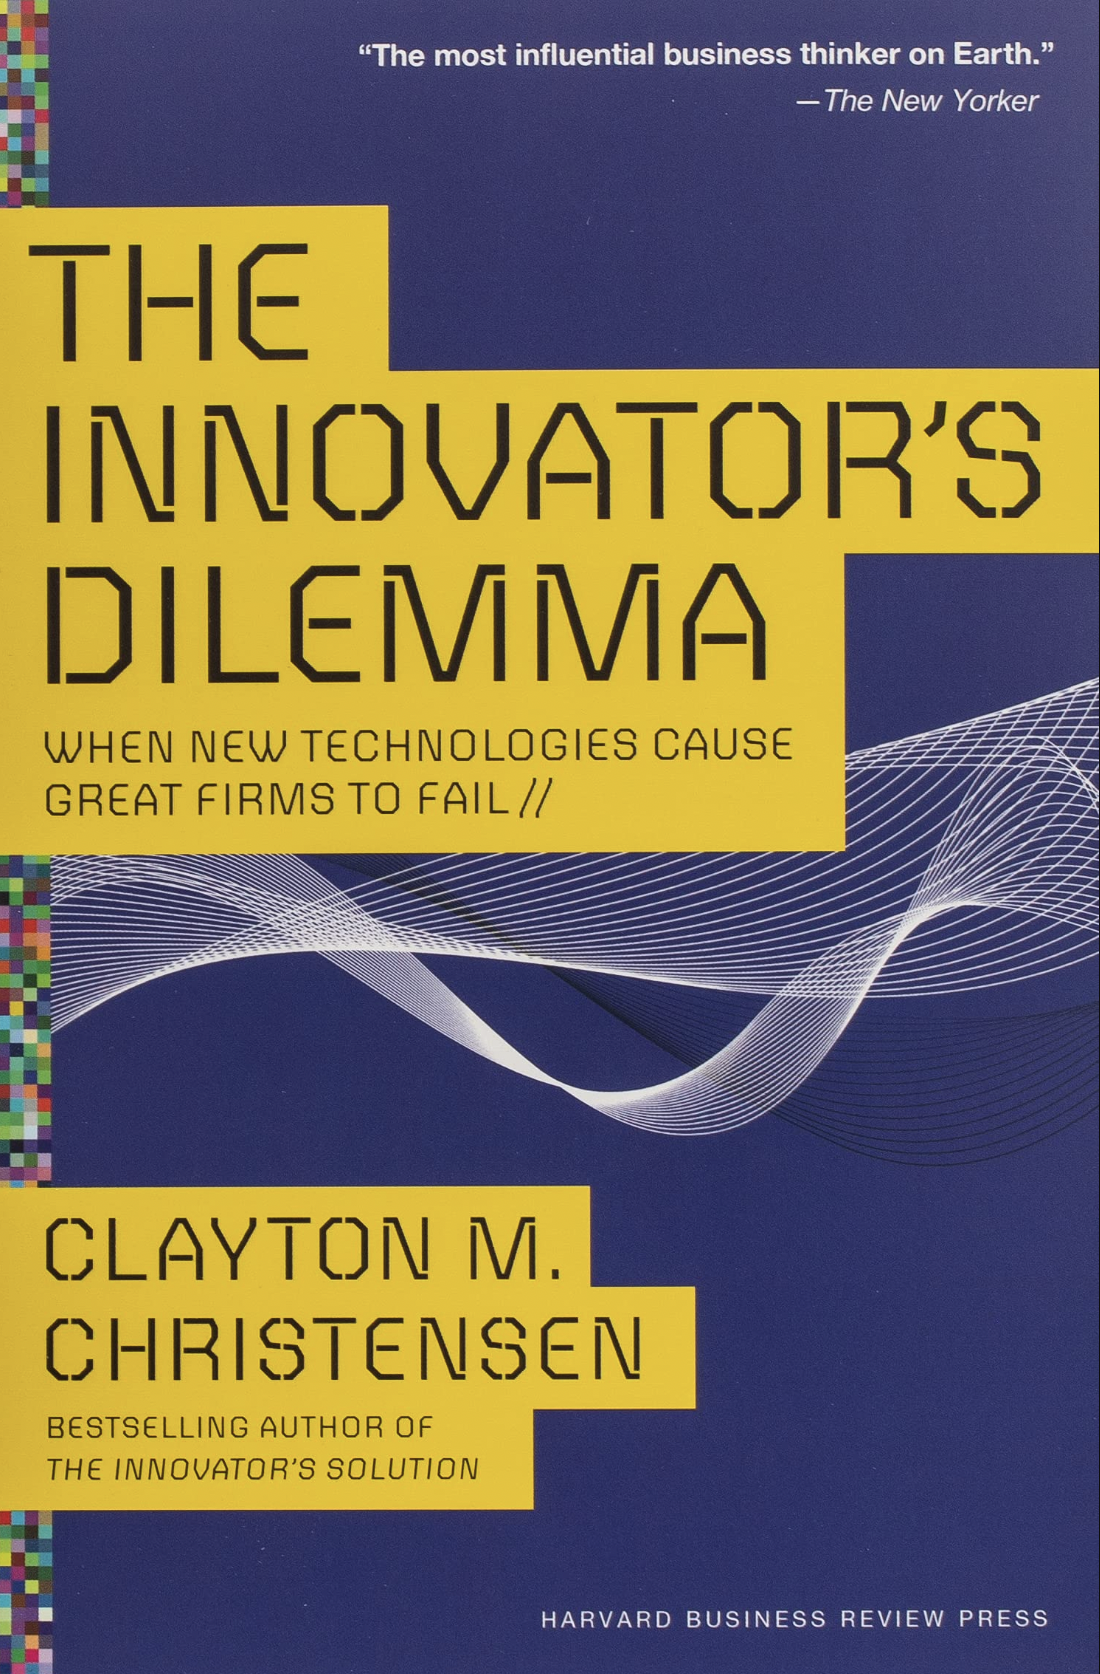 The Innovators Dilemma by Clayton M. Christensen